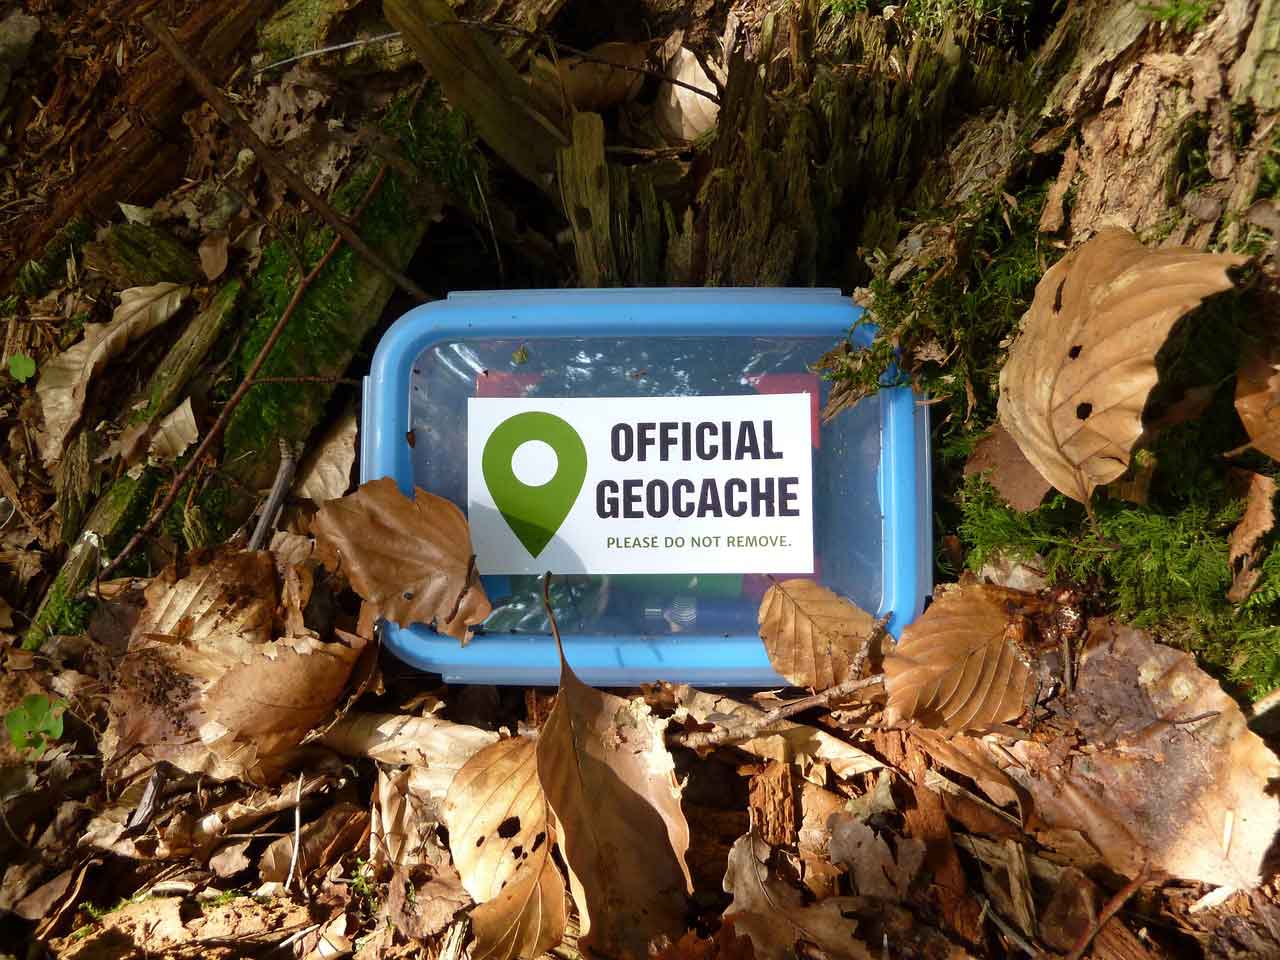 Geoaching Box im Wald auf dem Boden zwischen Blättern